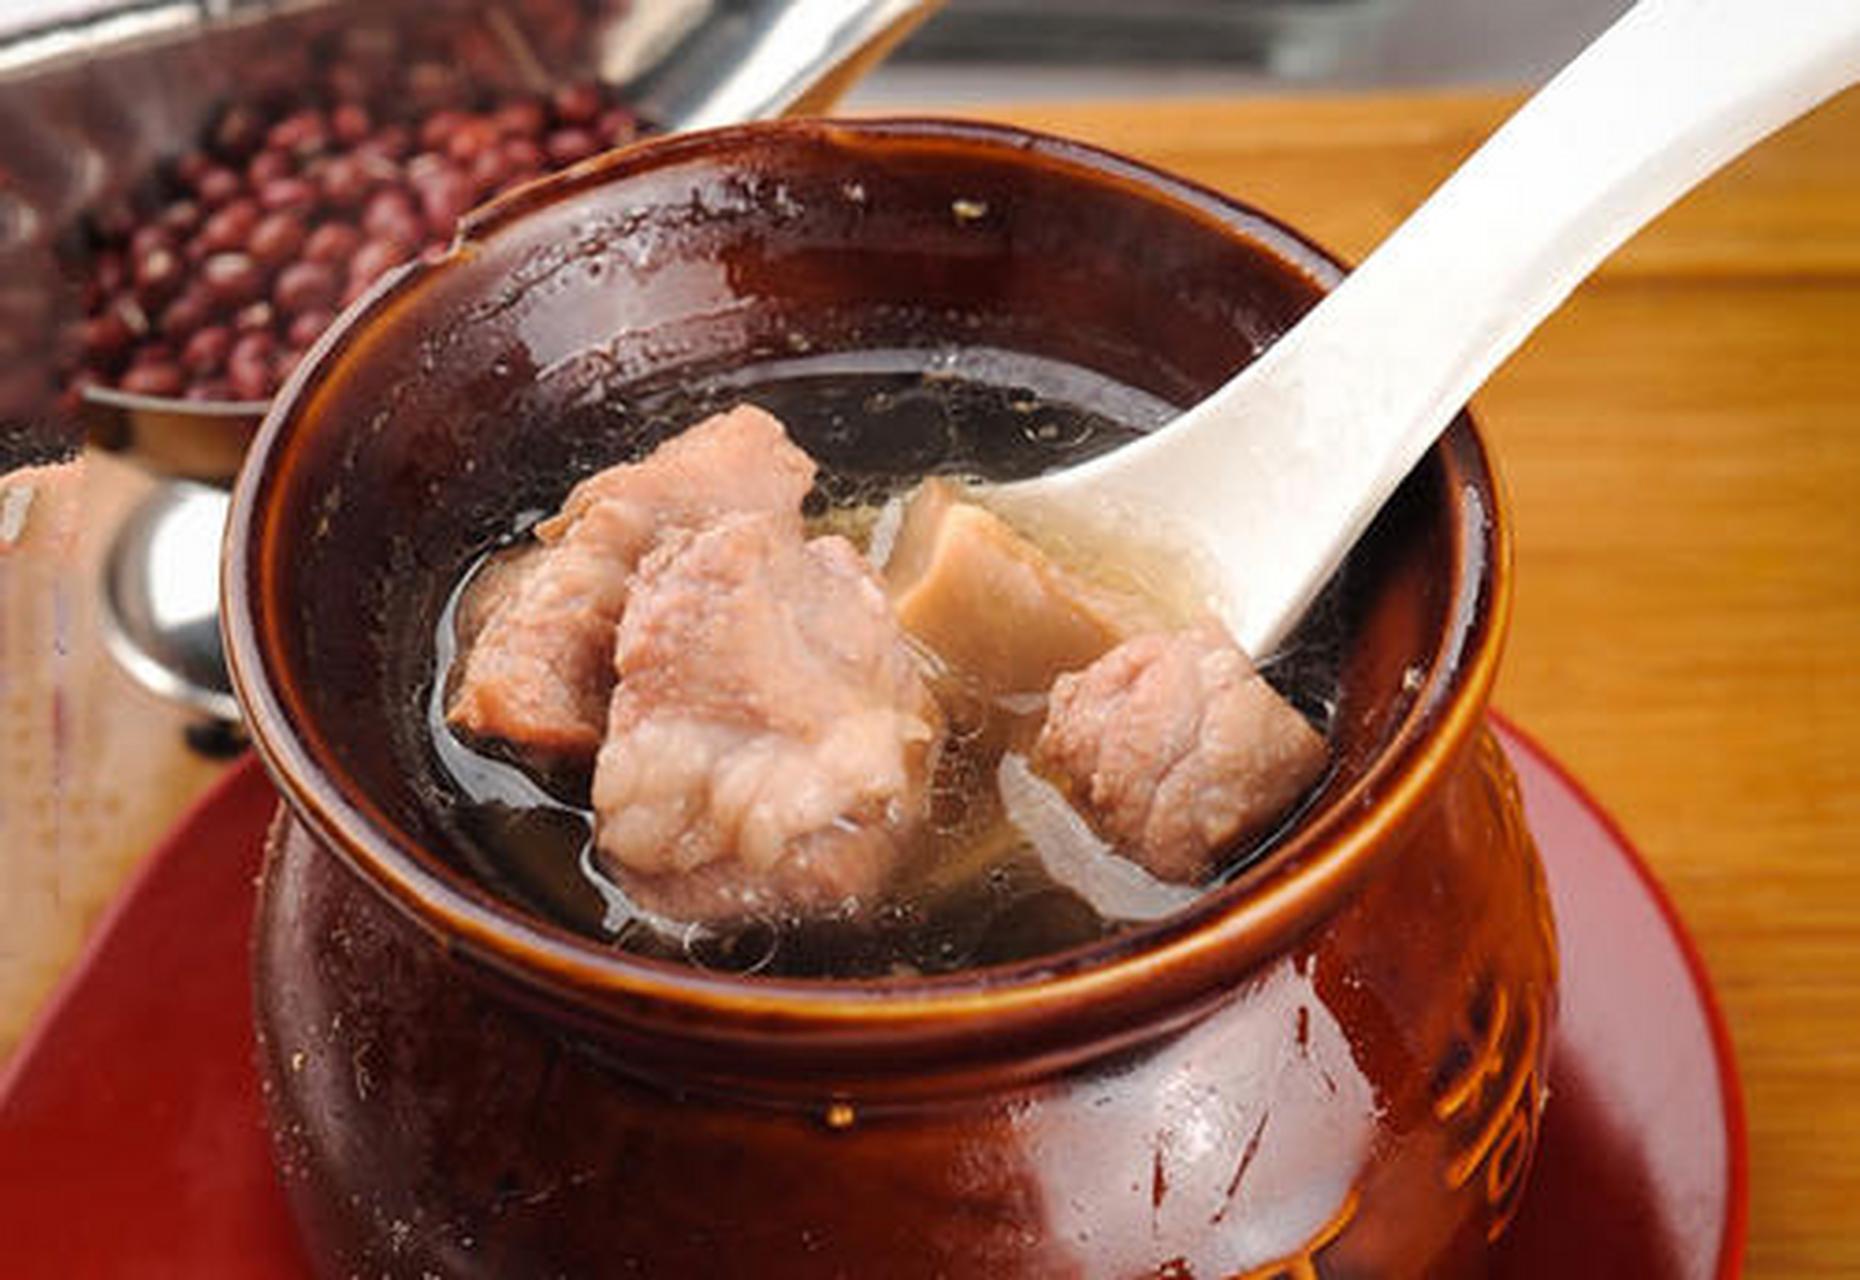 瓦罐汤,完全采用民间传统煨汤方法,以瓦罐为器,精配食物加以天然矿泉